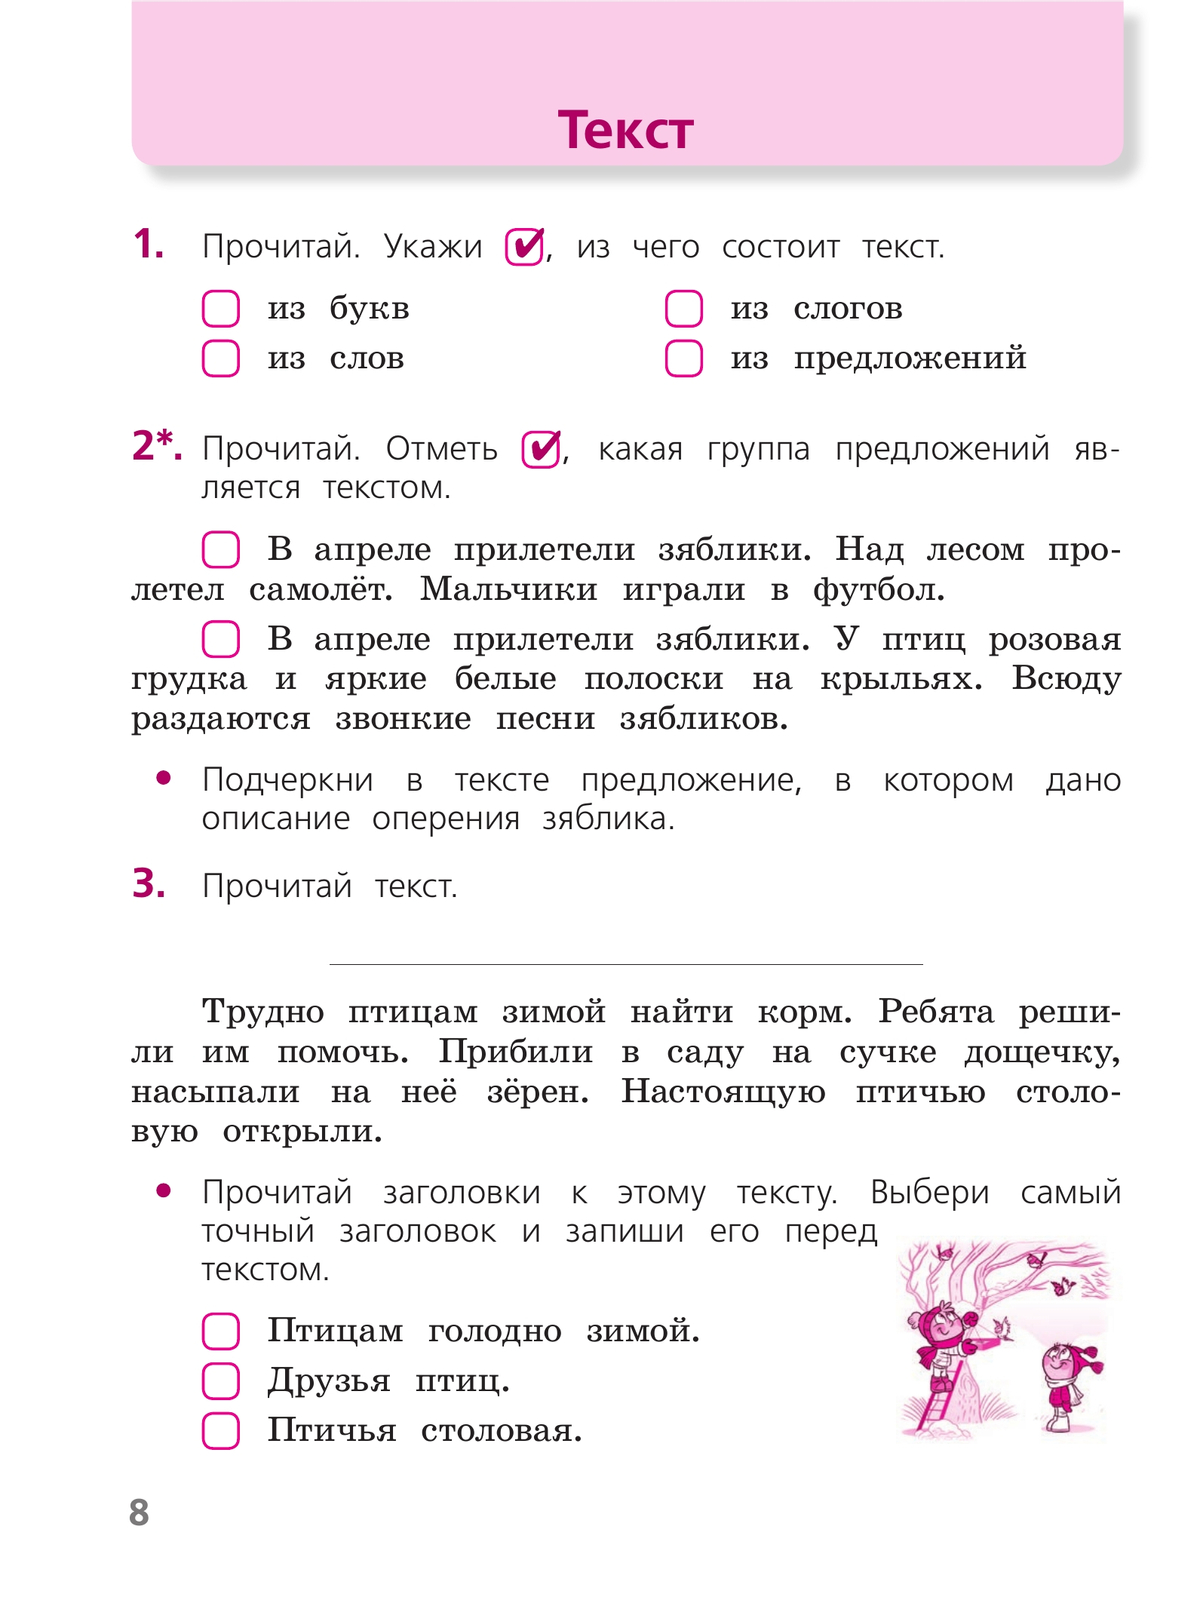 Русский язык. Тетрадь учебных достижений. 2 класс 9